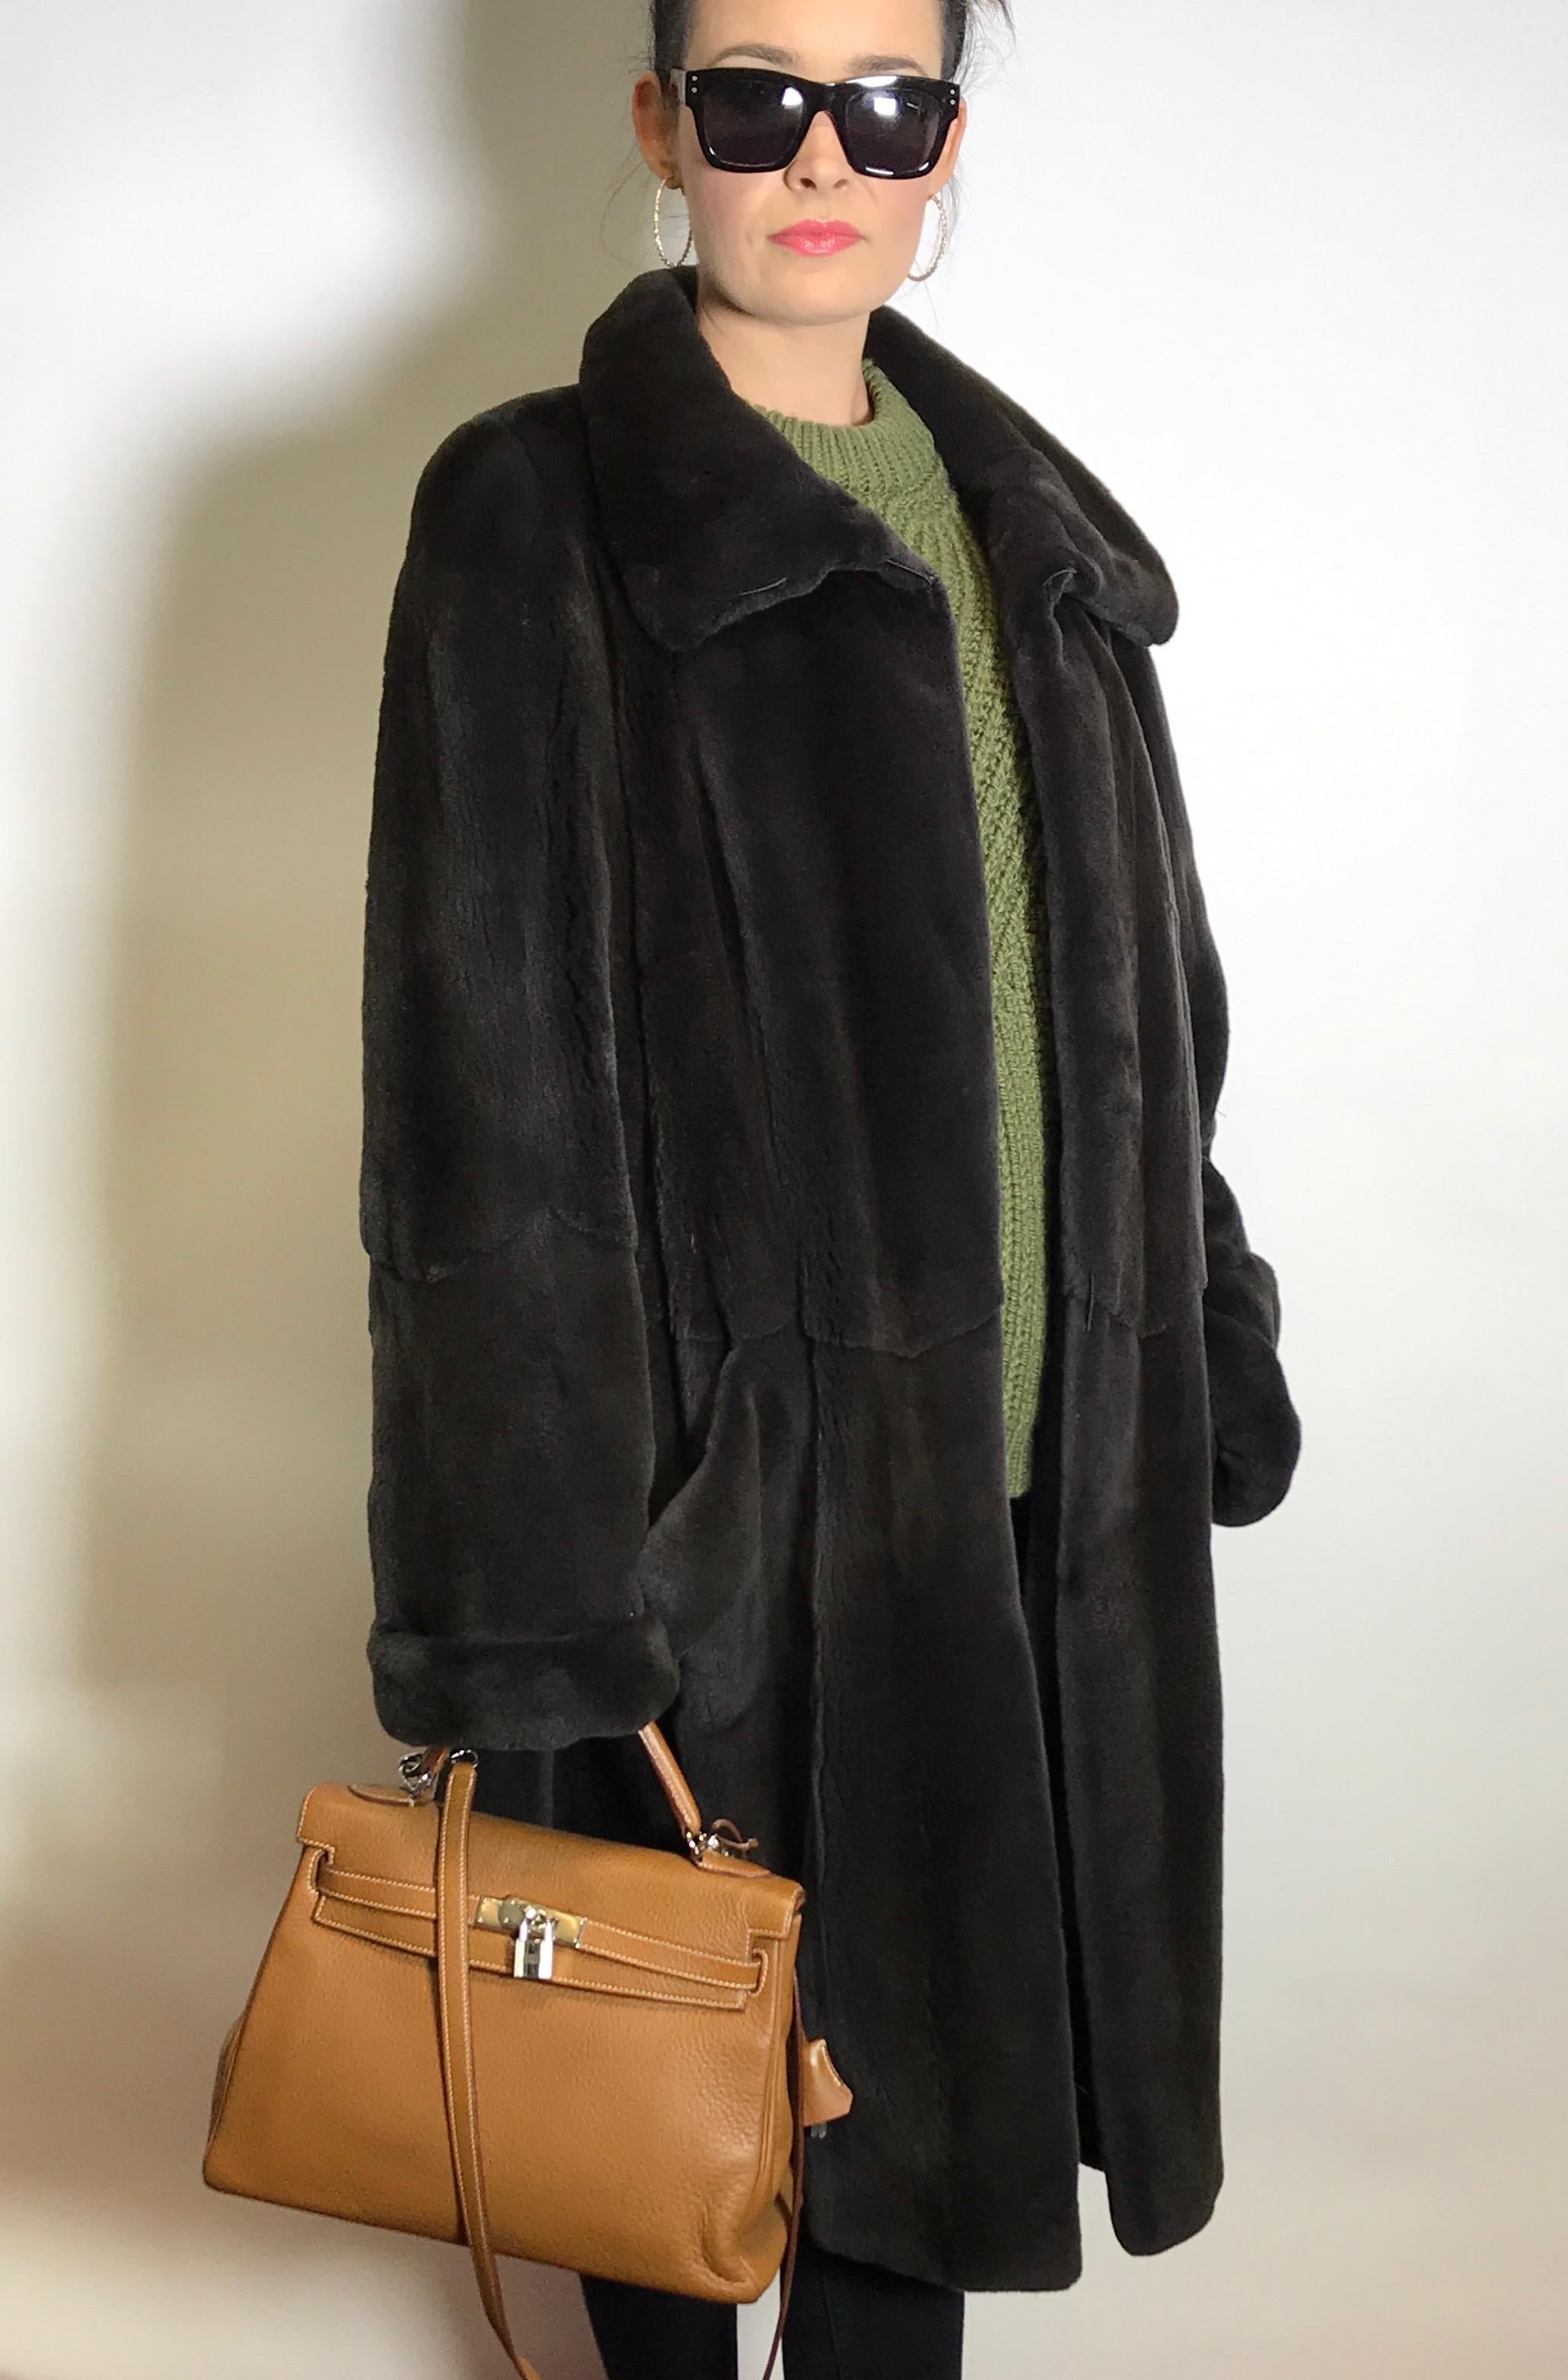 Women's Noble sheared velvet mink fur by Dieter Apmann 3/4 coat jacket. Black/dark gray. For Sale